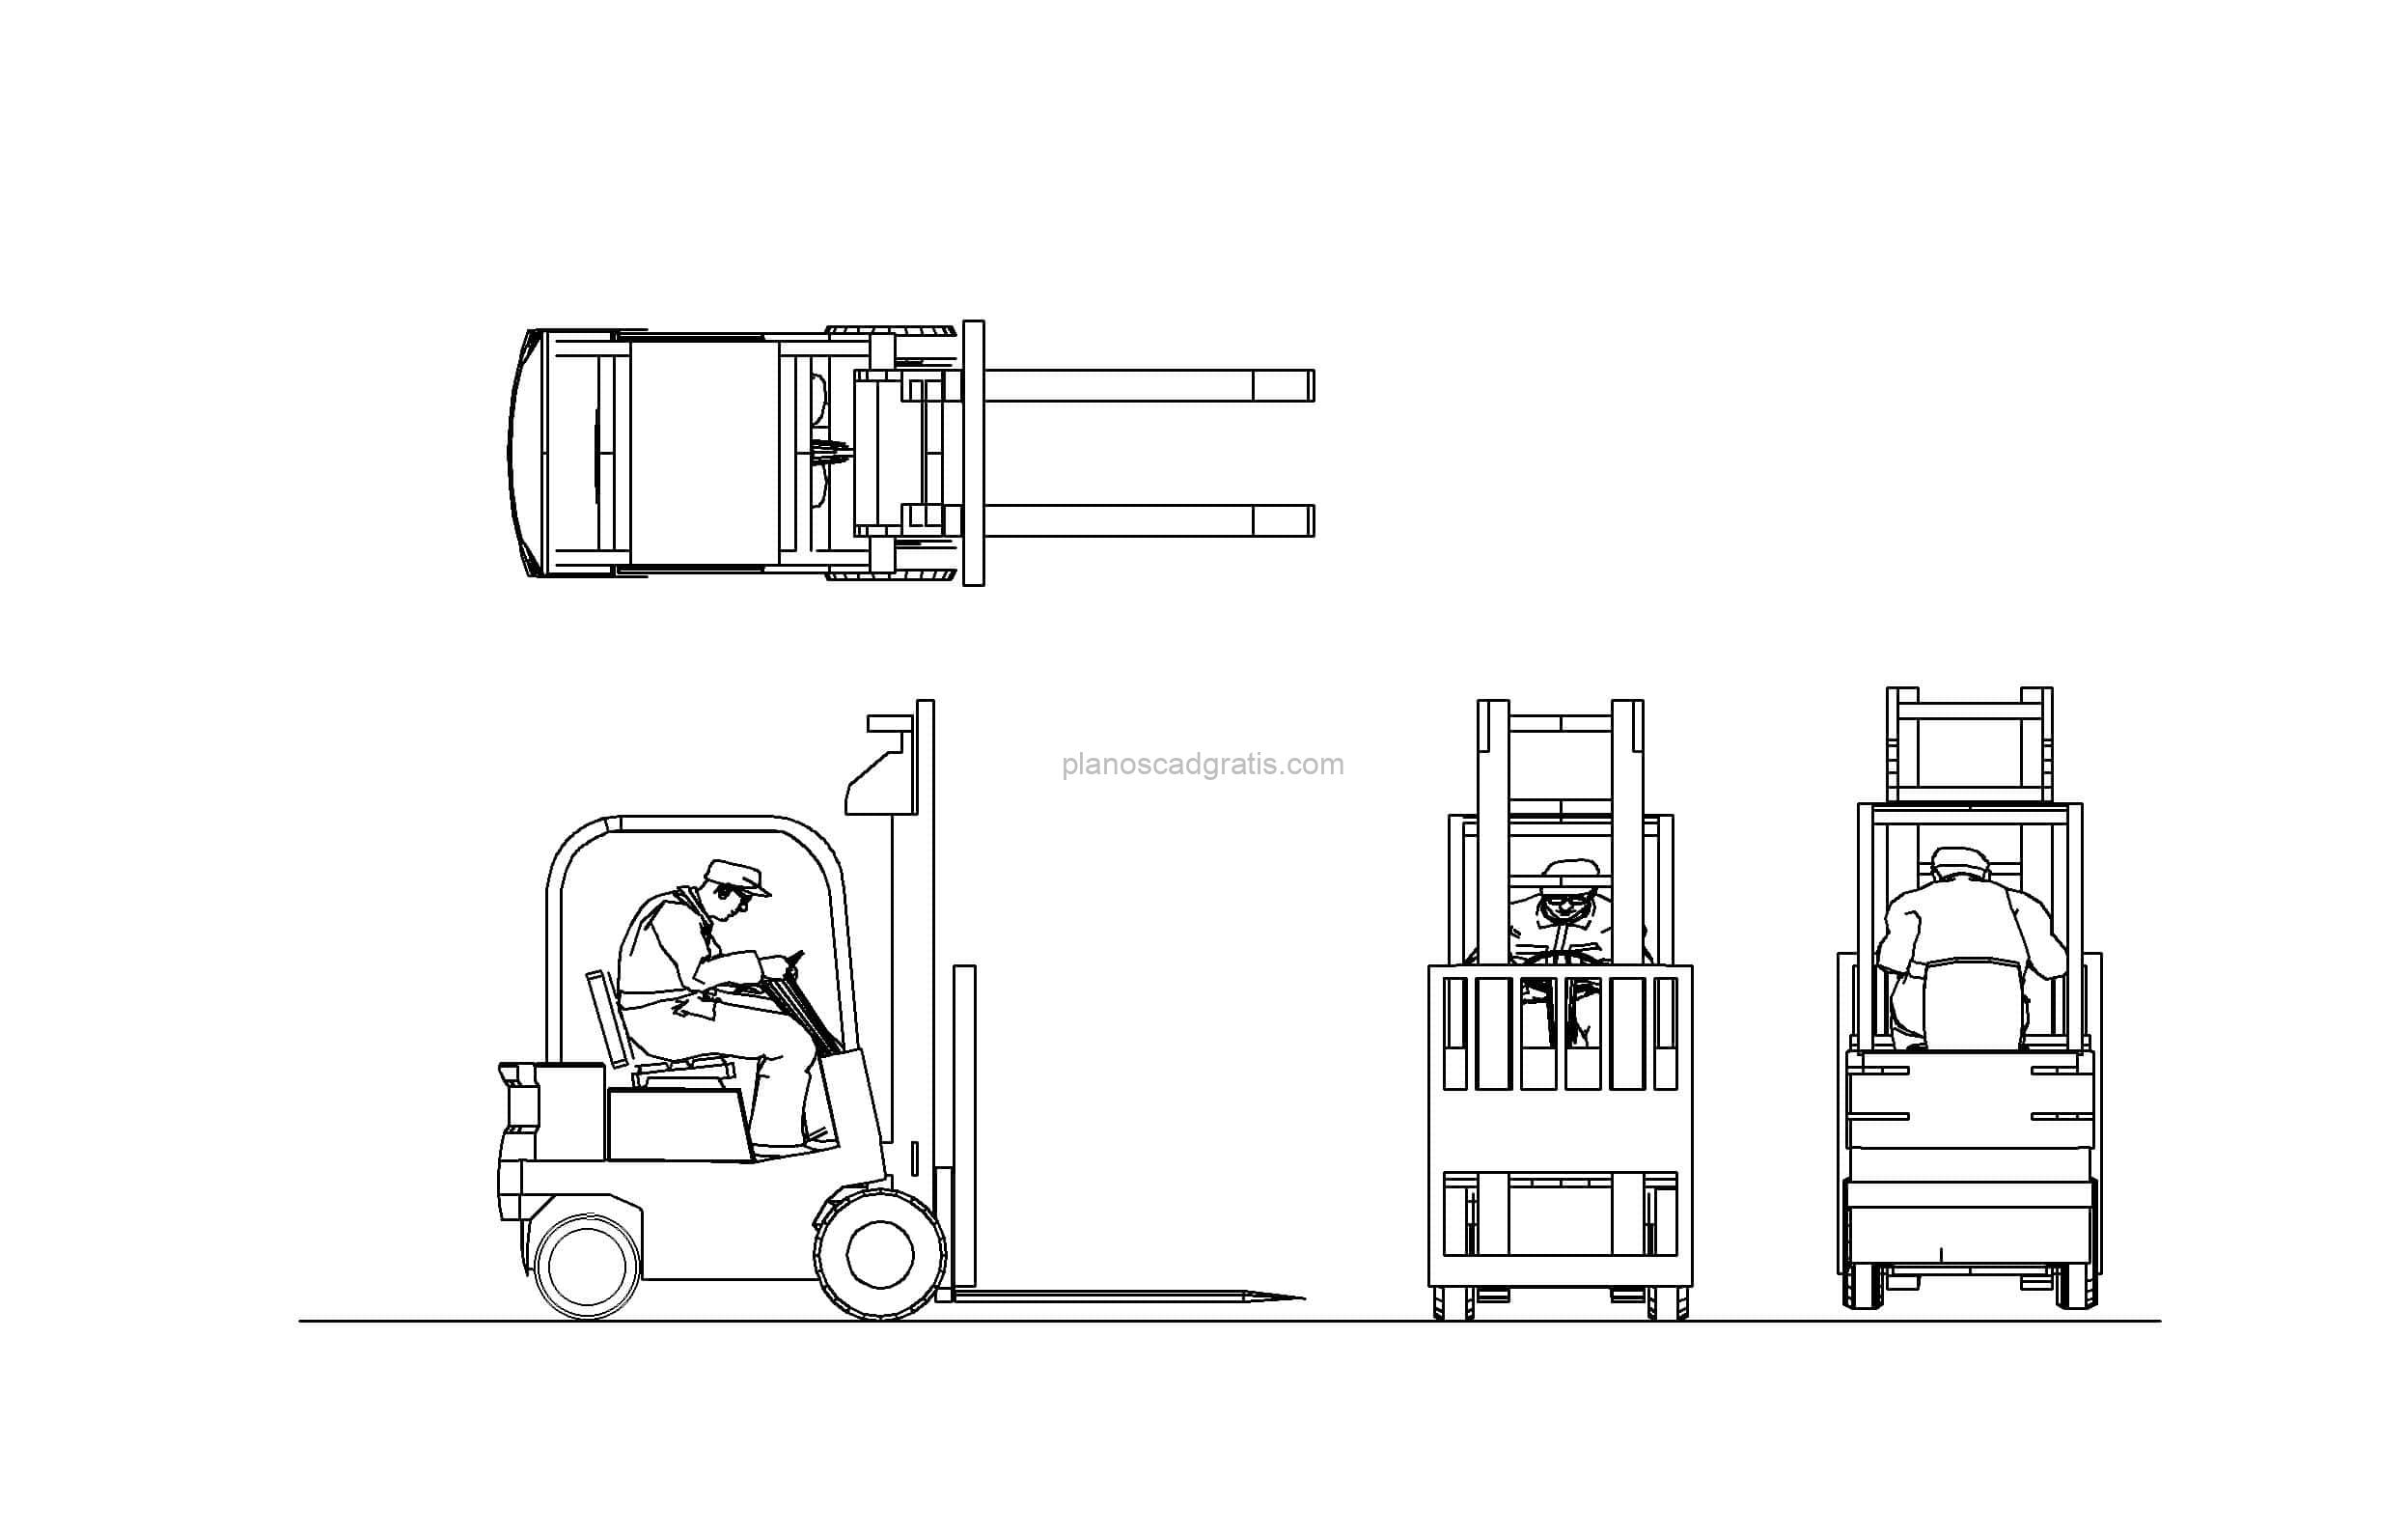 bloque de autocad de montacarga con operador, dibujo para descarga gratis, vistas en planta y elevaciones, formato dwg